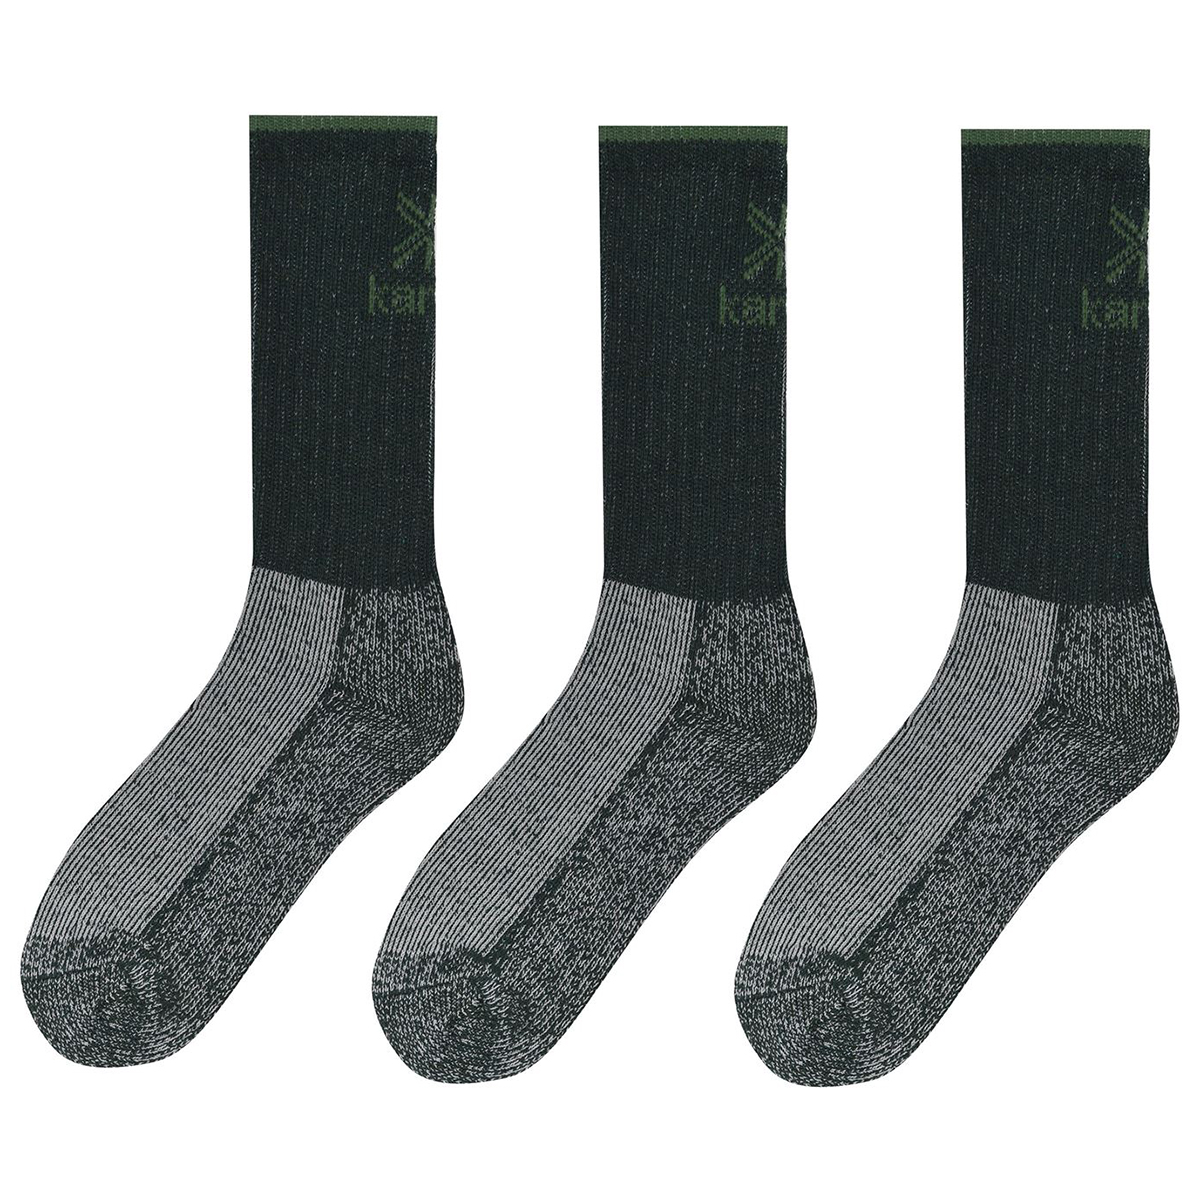 Karrimor Men's Midweight Boot Socks, 3-Pack Green 8-12 | eBay